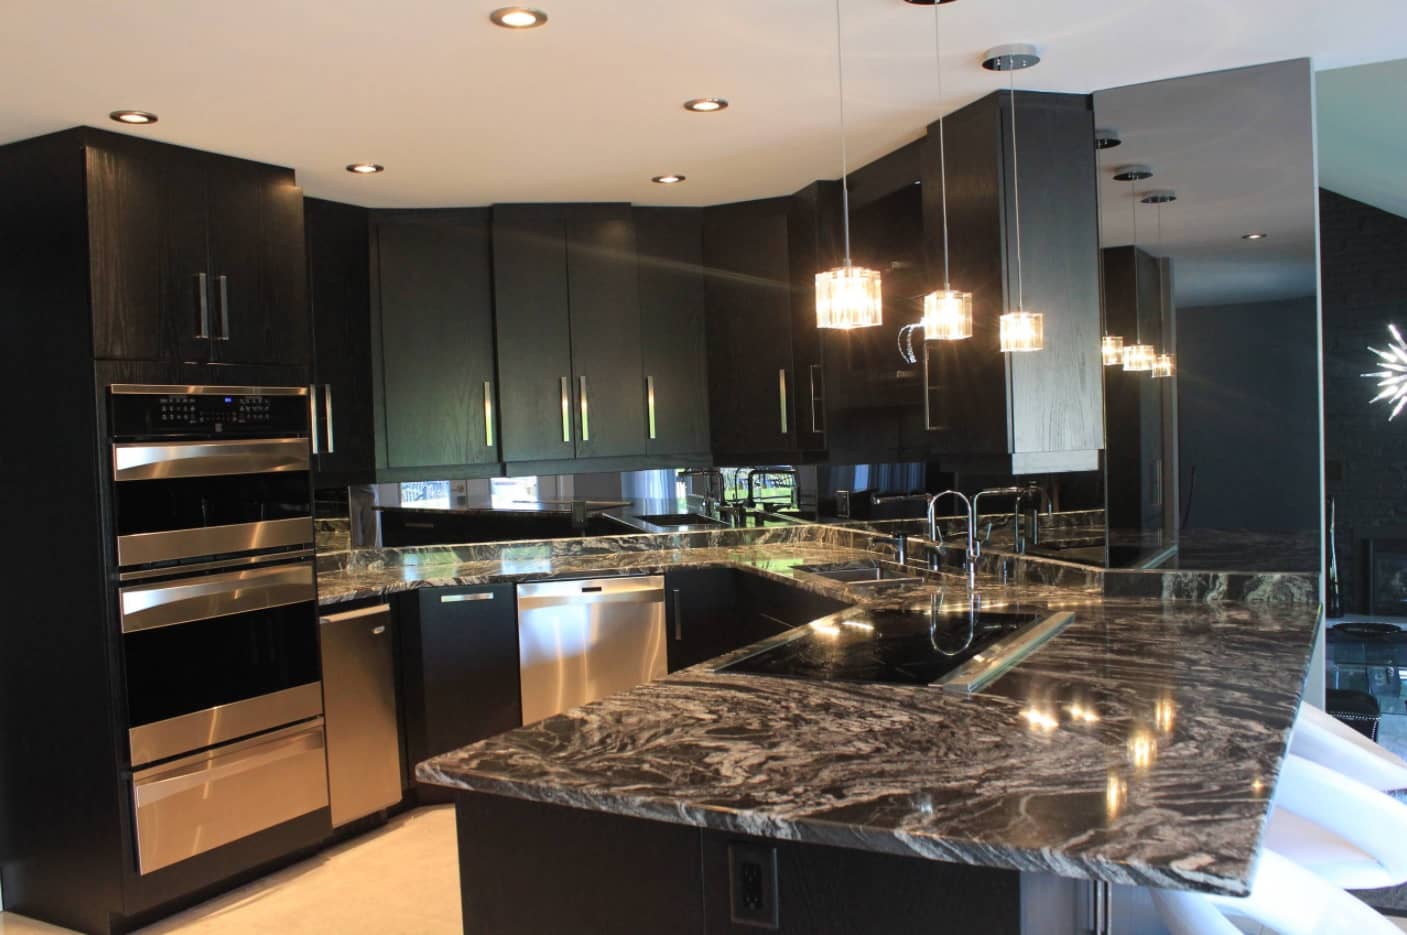 Hi-tech Kitchen in dark tones with marble countertop